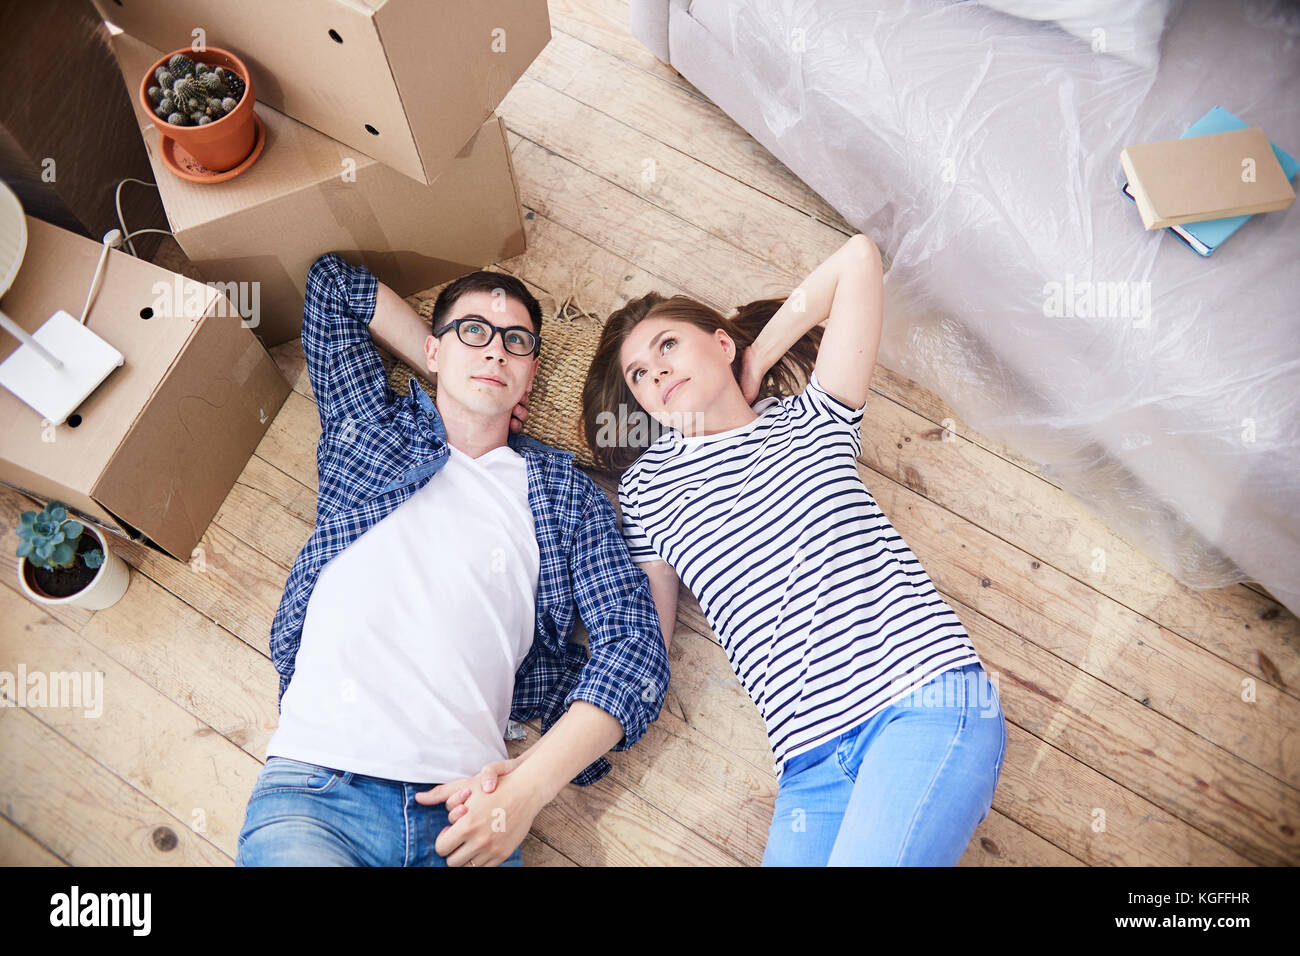 High angle view of loving young couple lying on floor de salon et à rêver de leur cohabitation dans de nouvelles vacances, pile de cartons de déménagement stan Banque D'Images